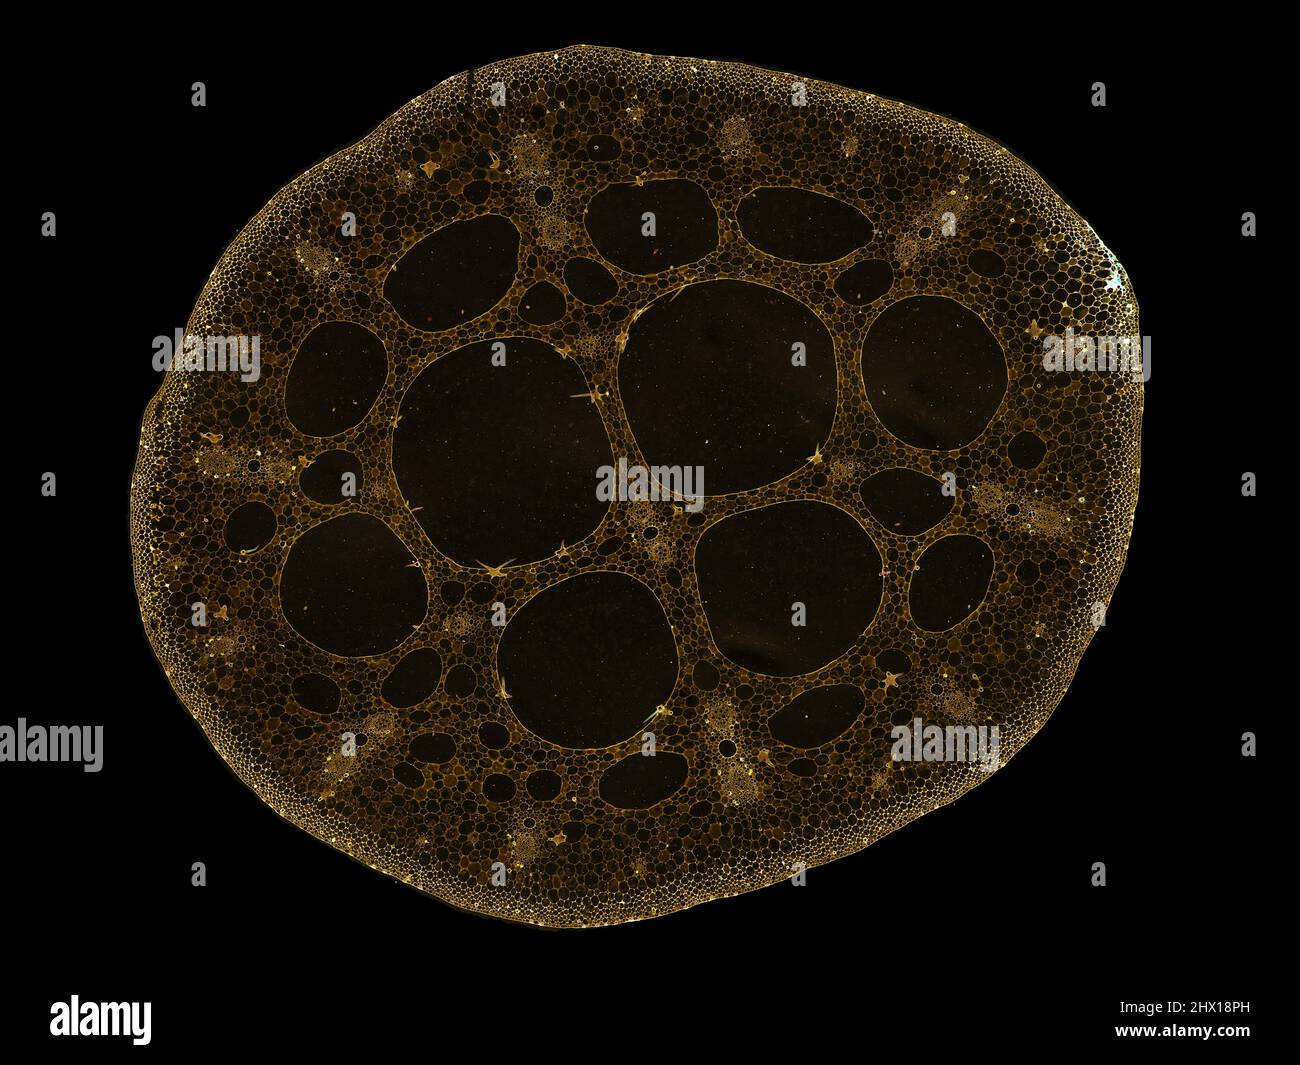 sezione trasversale tagliata fetta di stelo vegetale al microscopio – vista  microscopica delle cellule vegetali per l'educazione botanica – alta  qualità Foto stock - Alamy